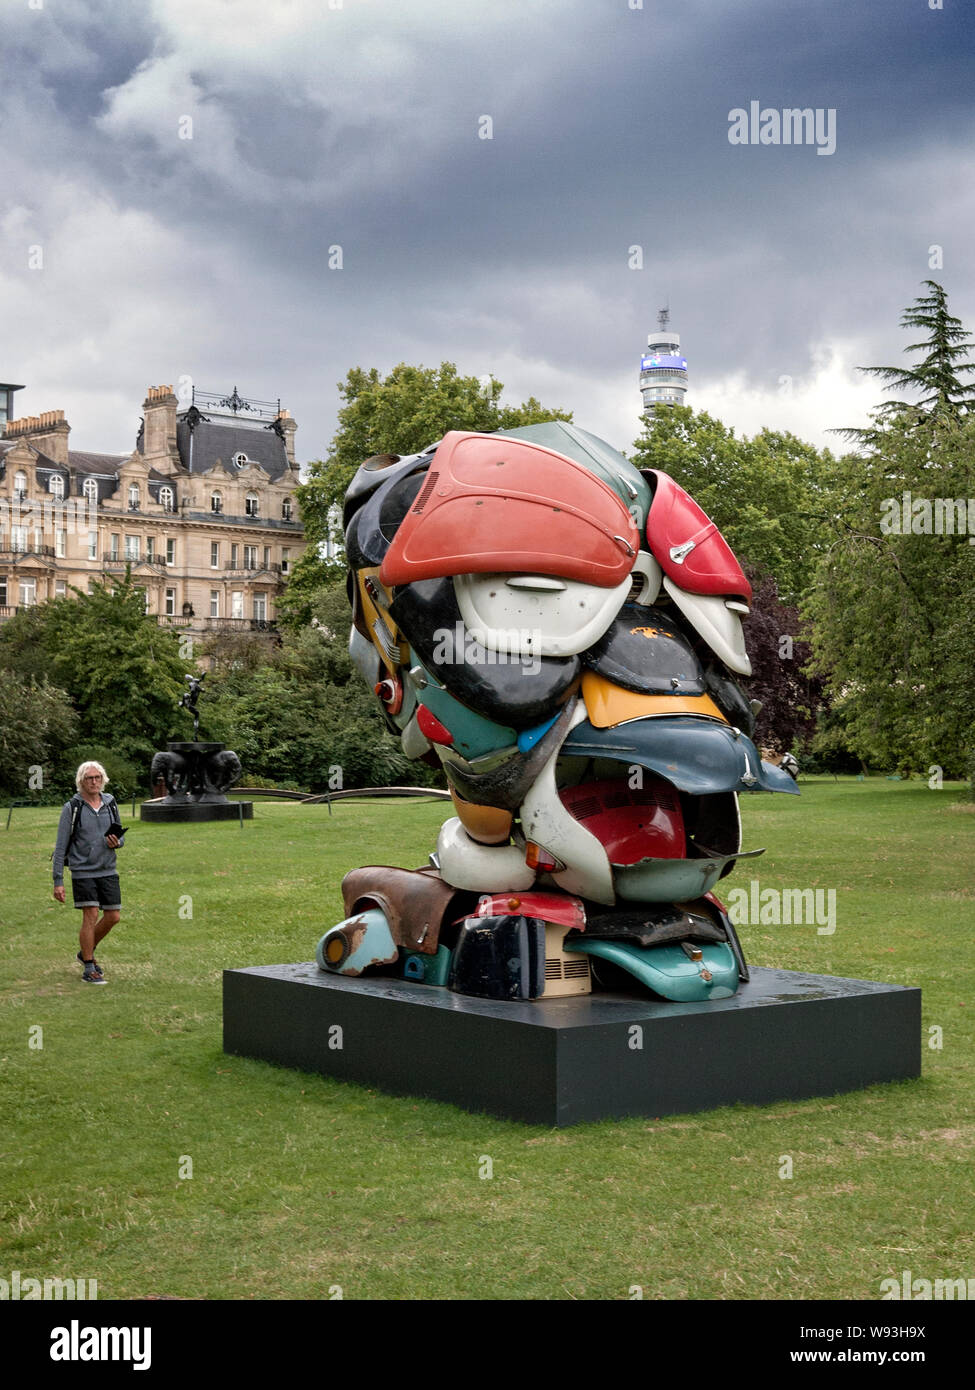 Zak Ove sculpture 'Autonomous Morris' on show in Regents Park London part of Frieze Art show Stock Photo